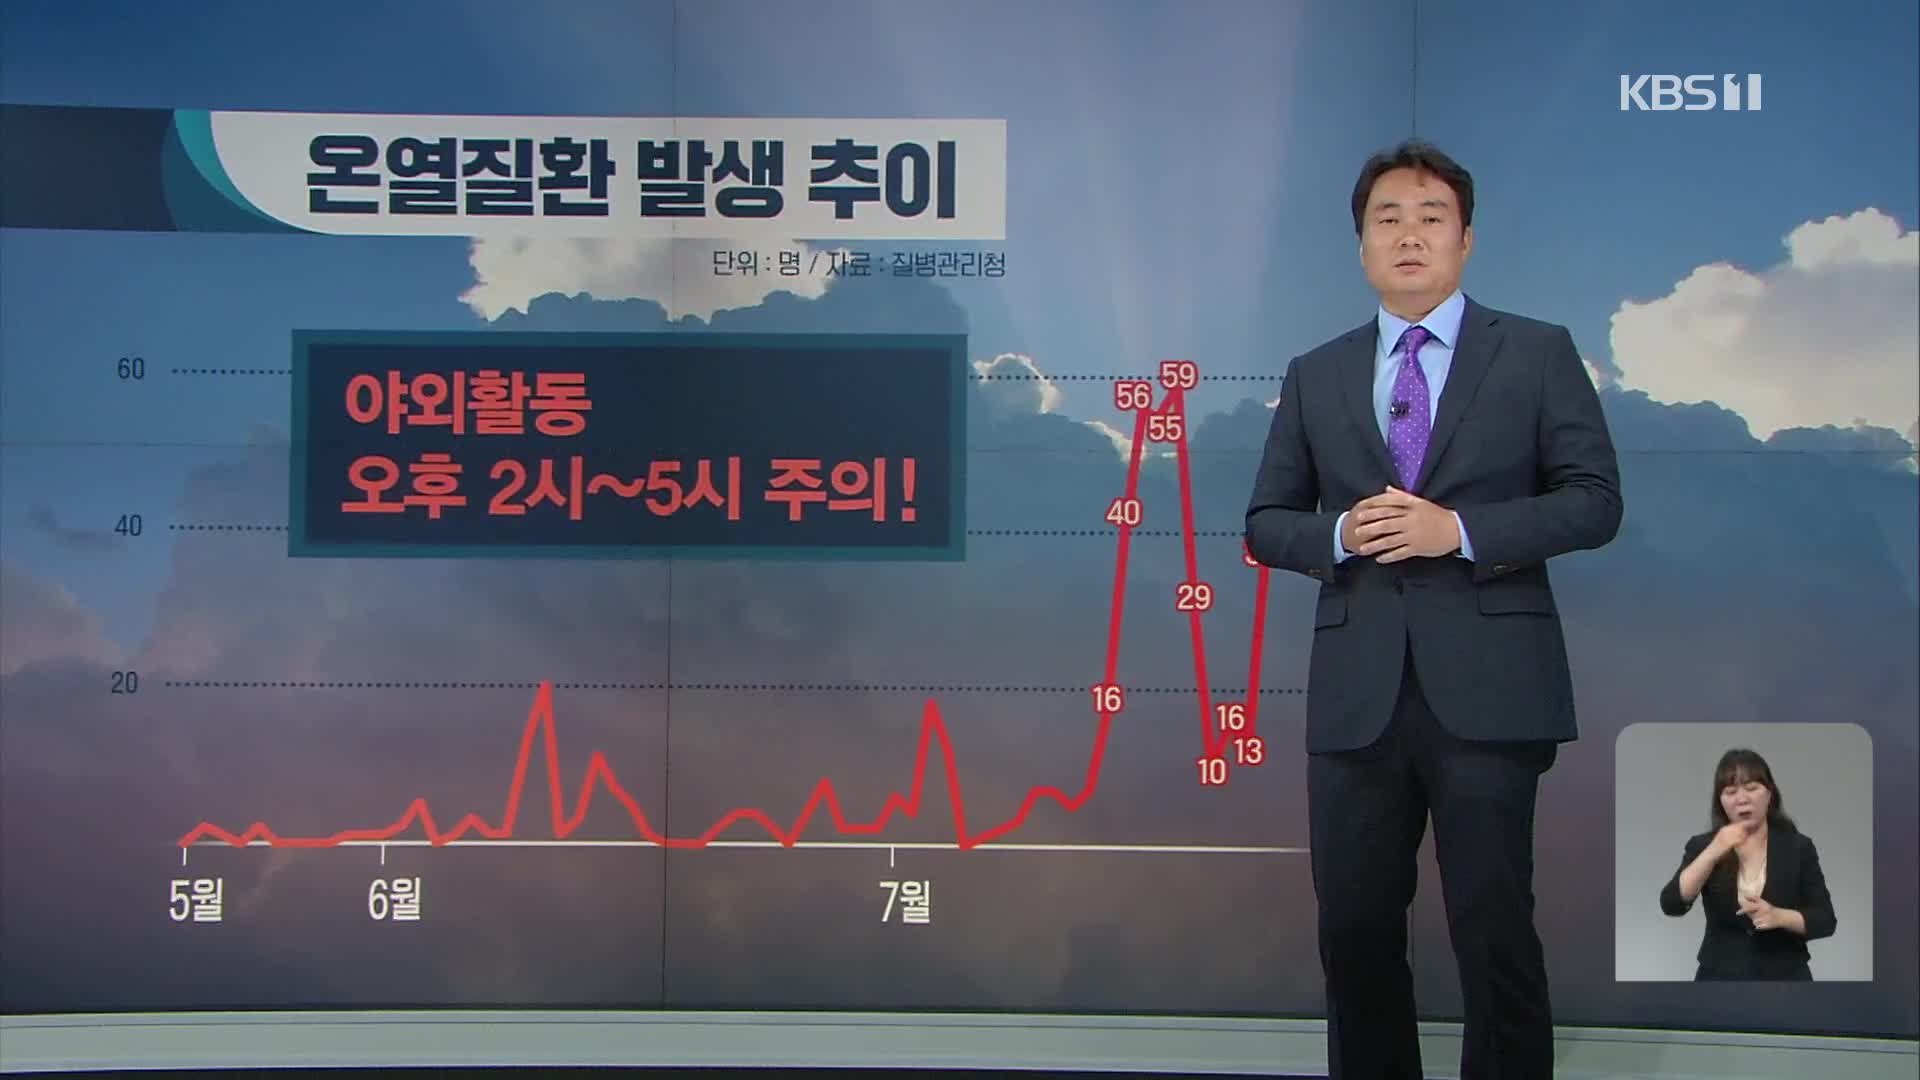 서울 37도 폭염…고수온 경보 확대 [14시 뉴스특보]